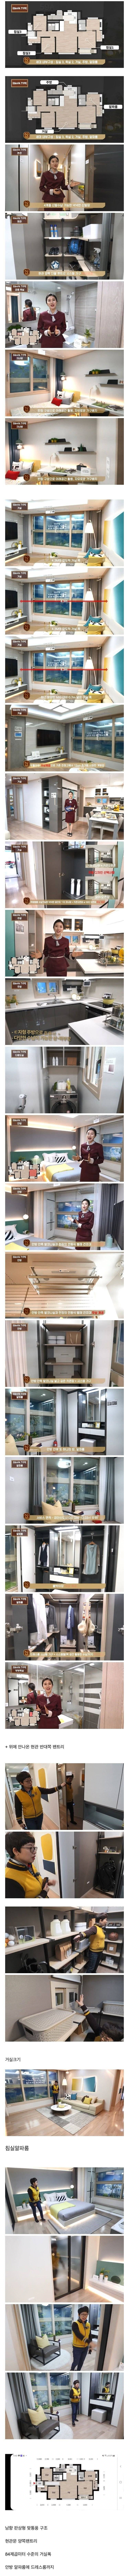 썸네일-역대급으로 잘 뽑혔다는 25평 신축 아파트.jpg-이미지